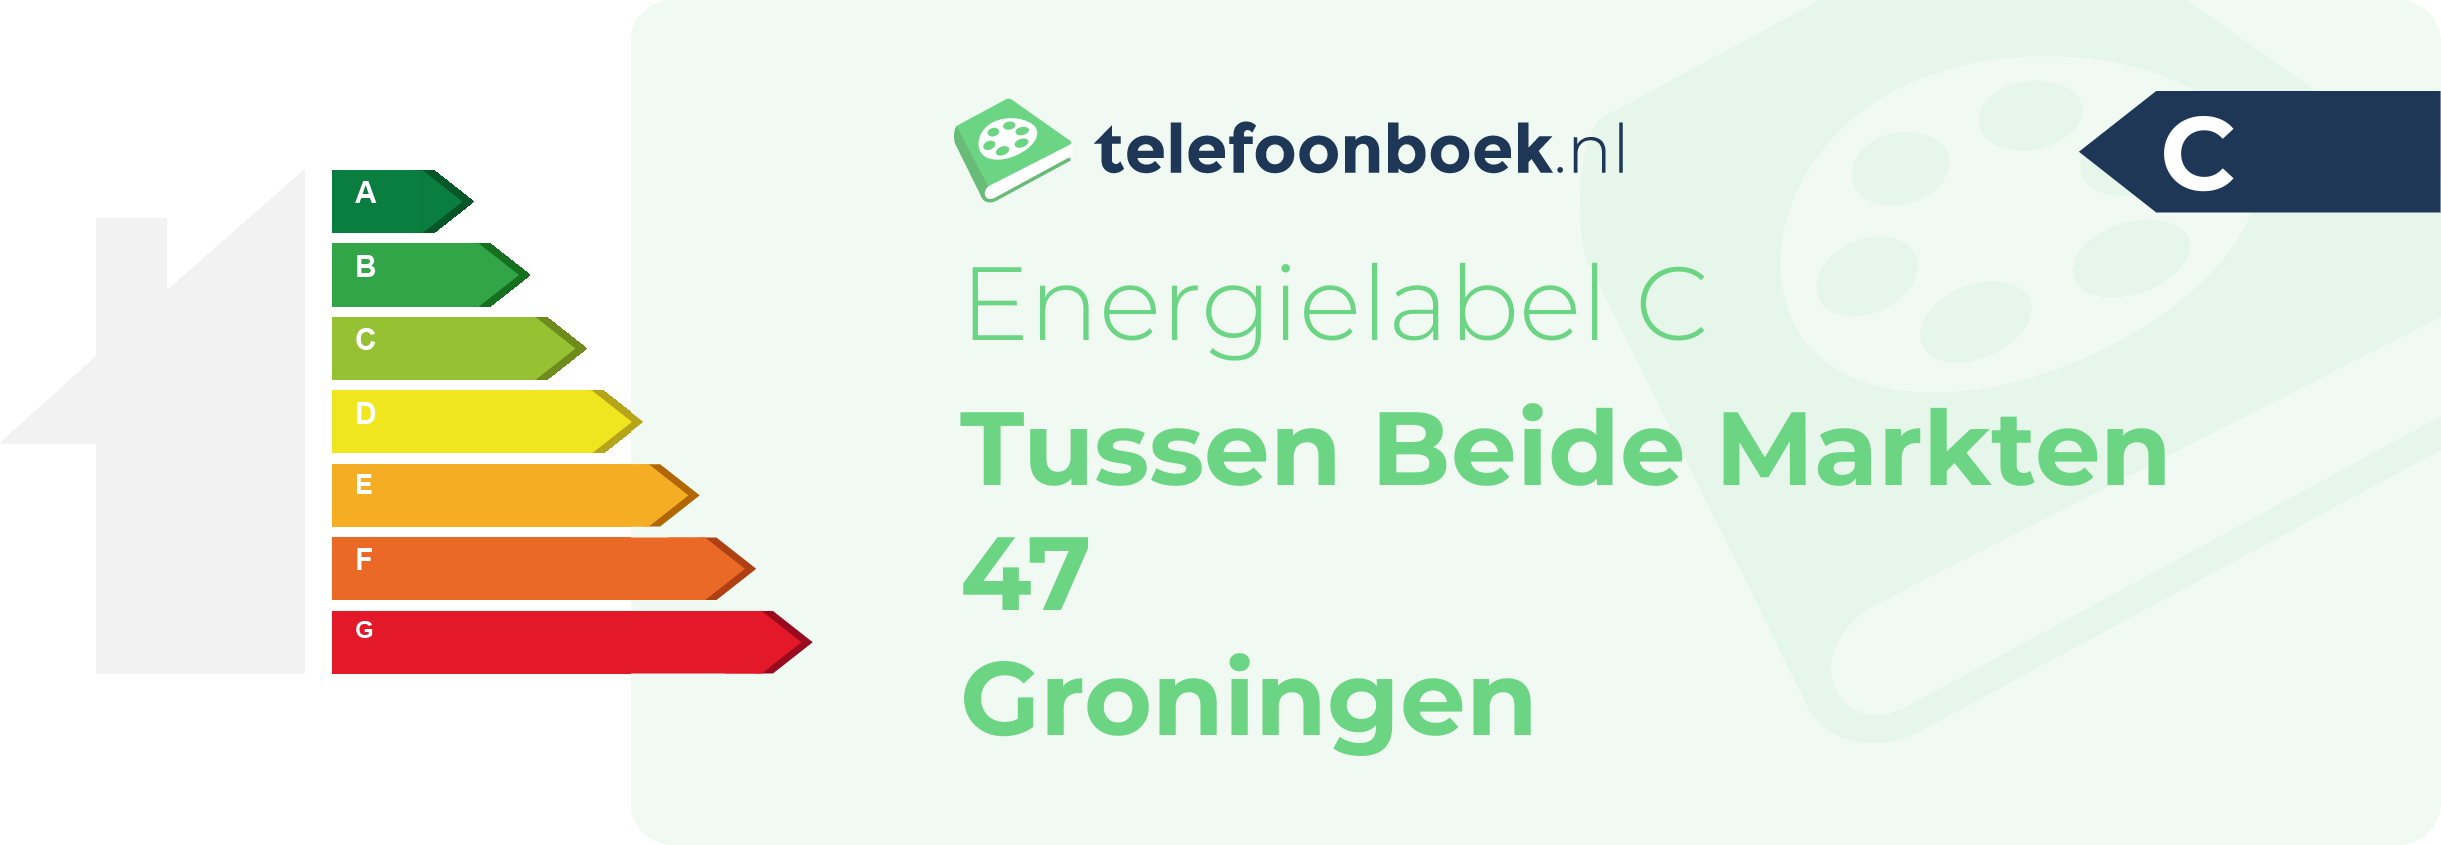 Energielabel Tussen Beide Markten 47 Groningen